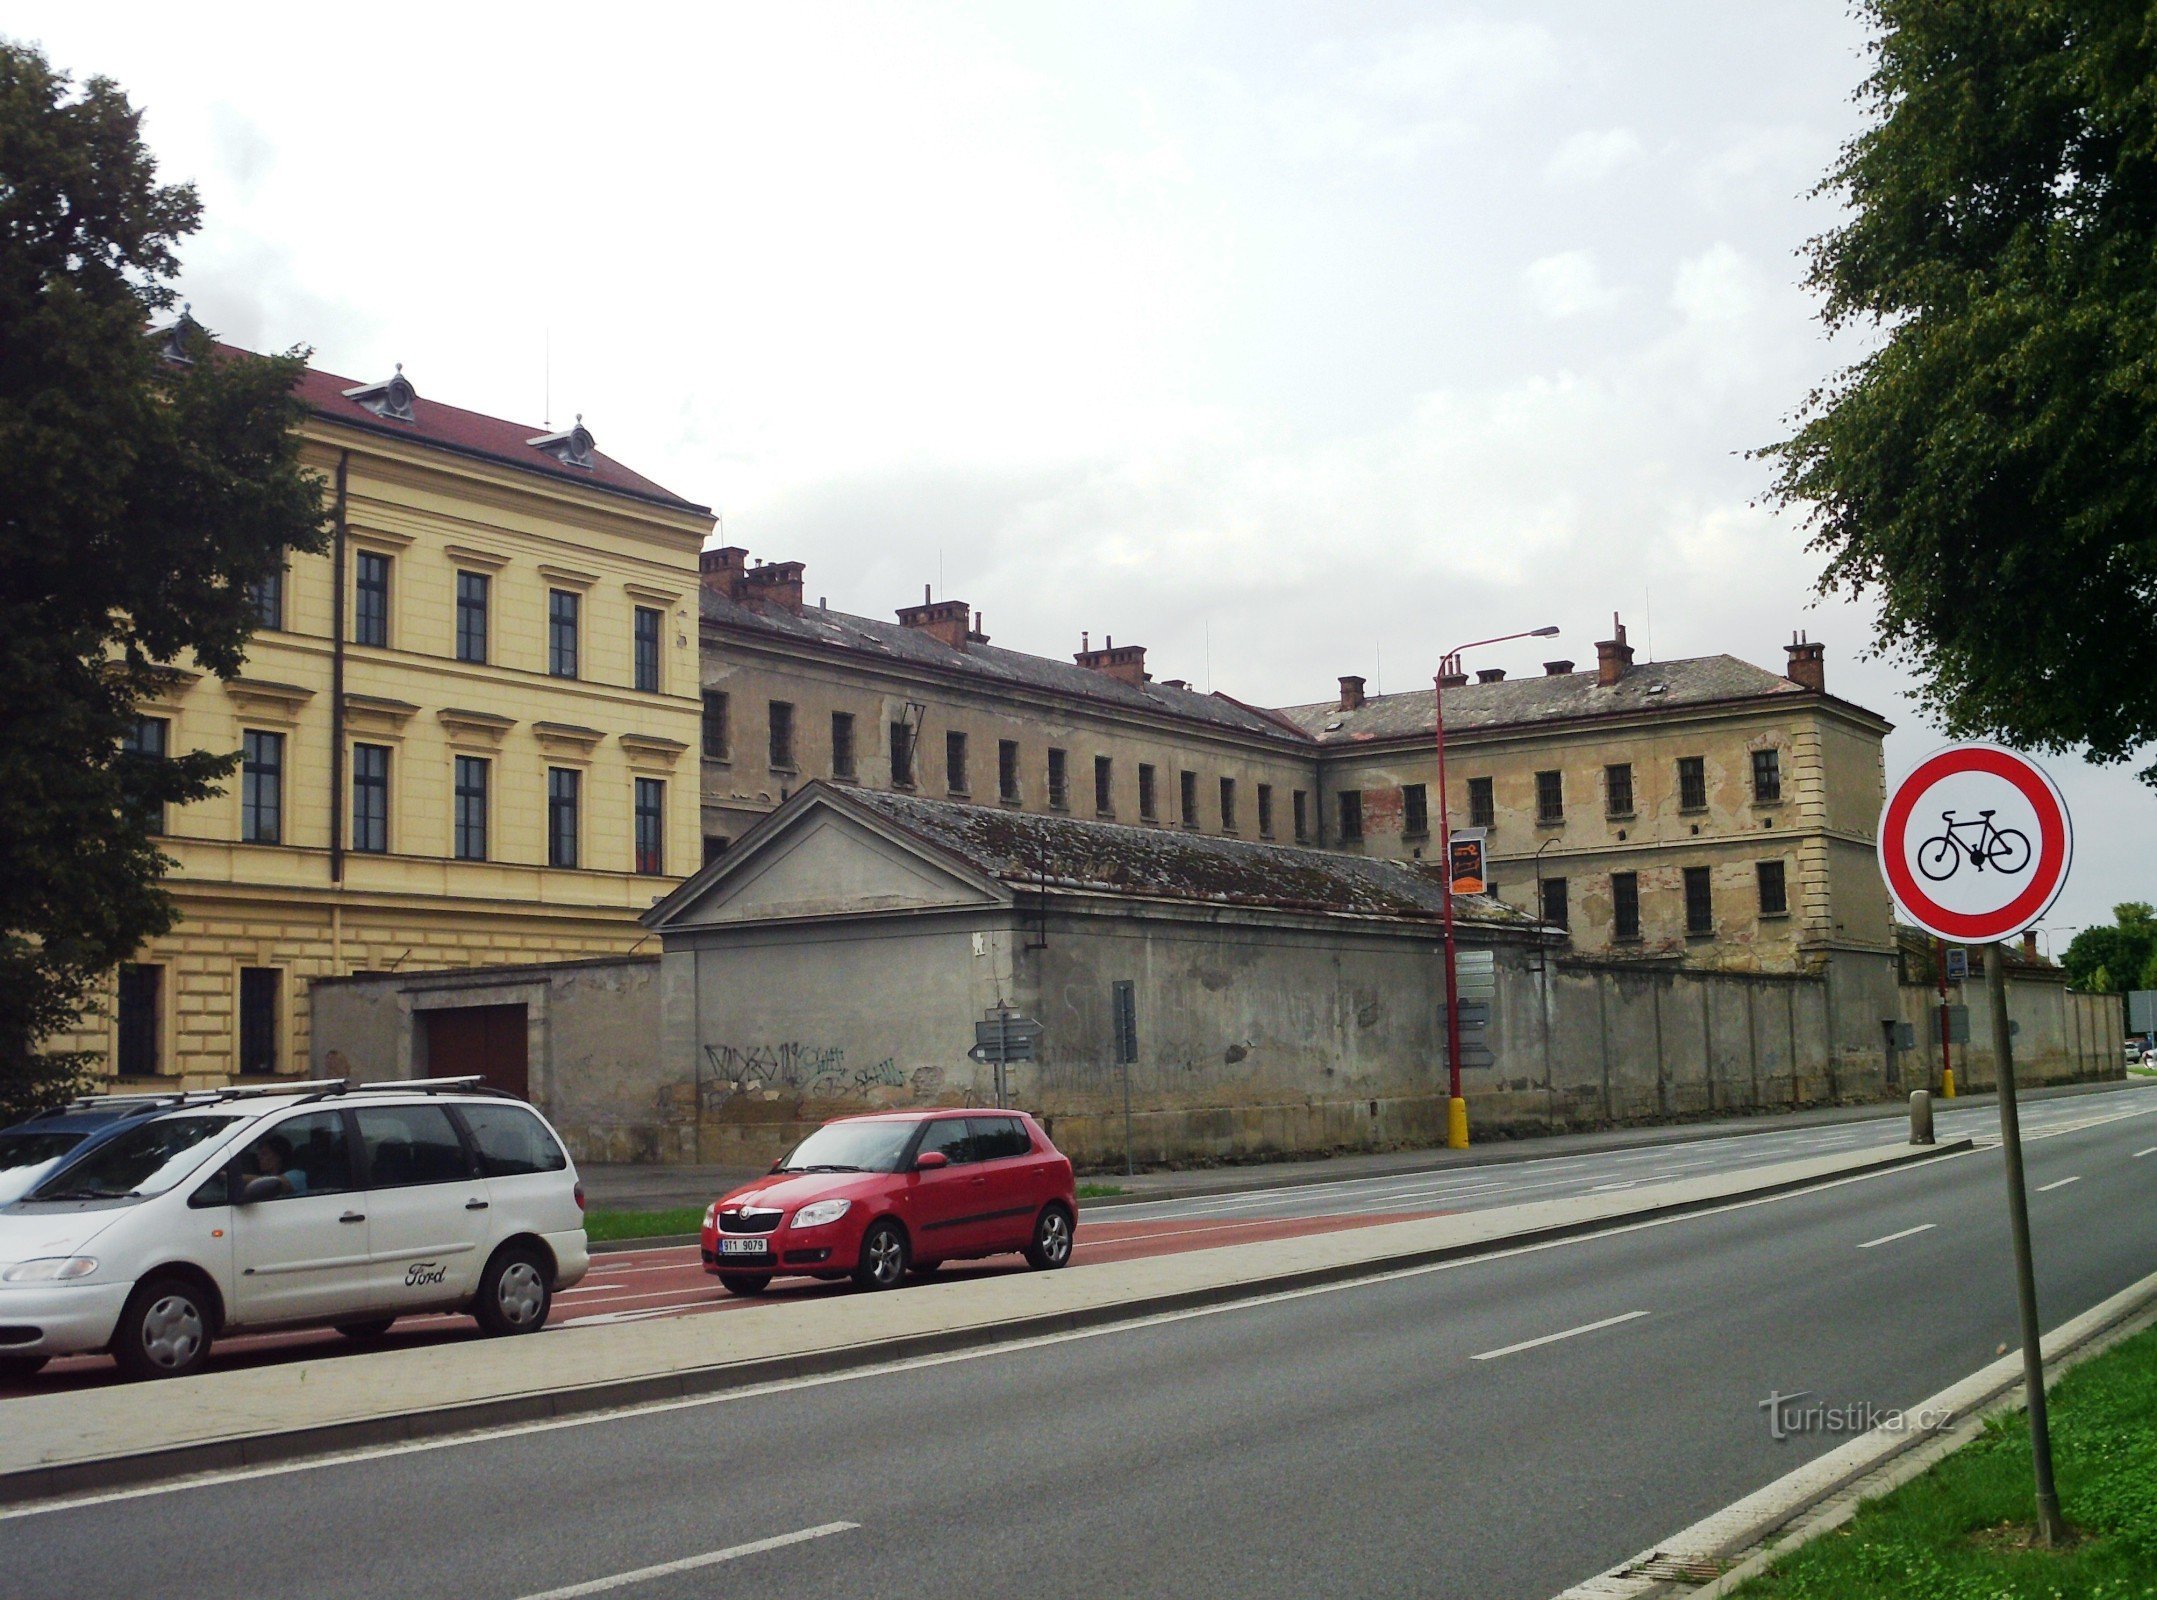 θέα της φυλακής από την οδό Velehradská